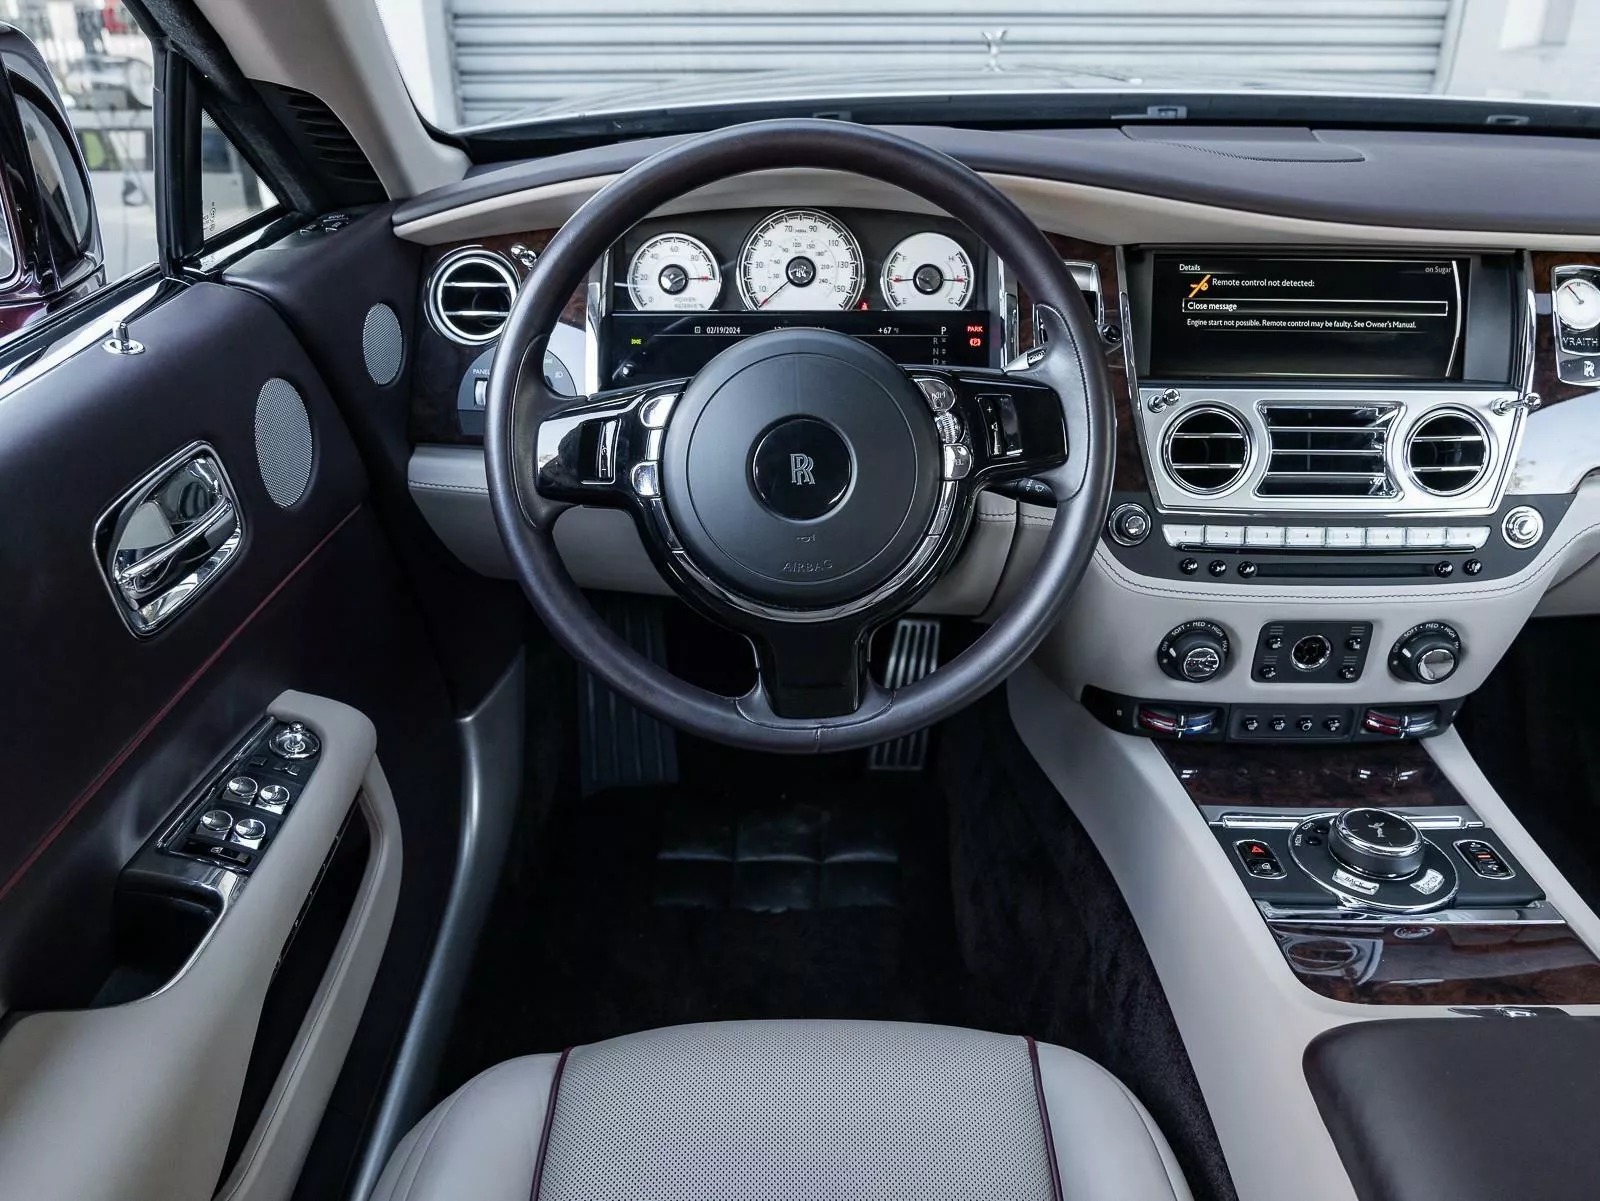 Rao bán Bugatti Chiron giá quy đổi hơn 95 tỷ đồng, chủ xe hứa tặng kèm Rolls-Royce Wraith hợp tông màu- Ảnh 9.